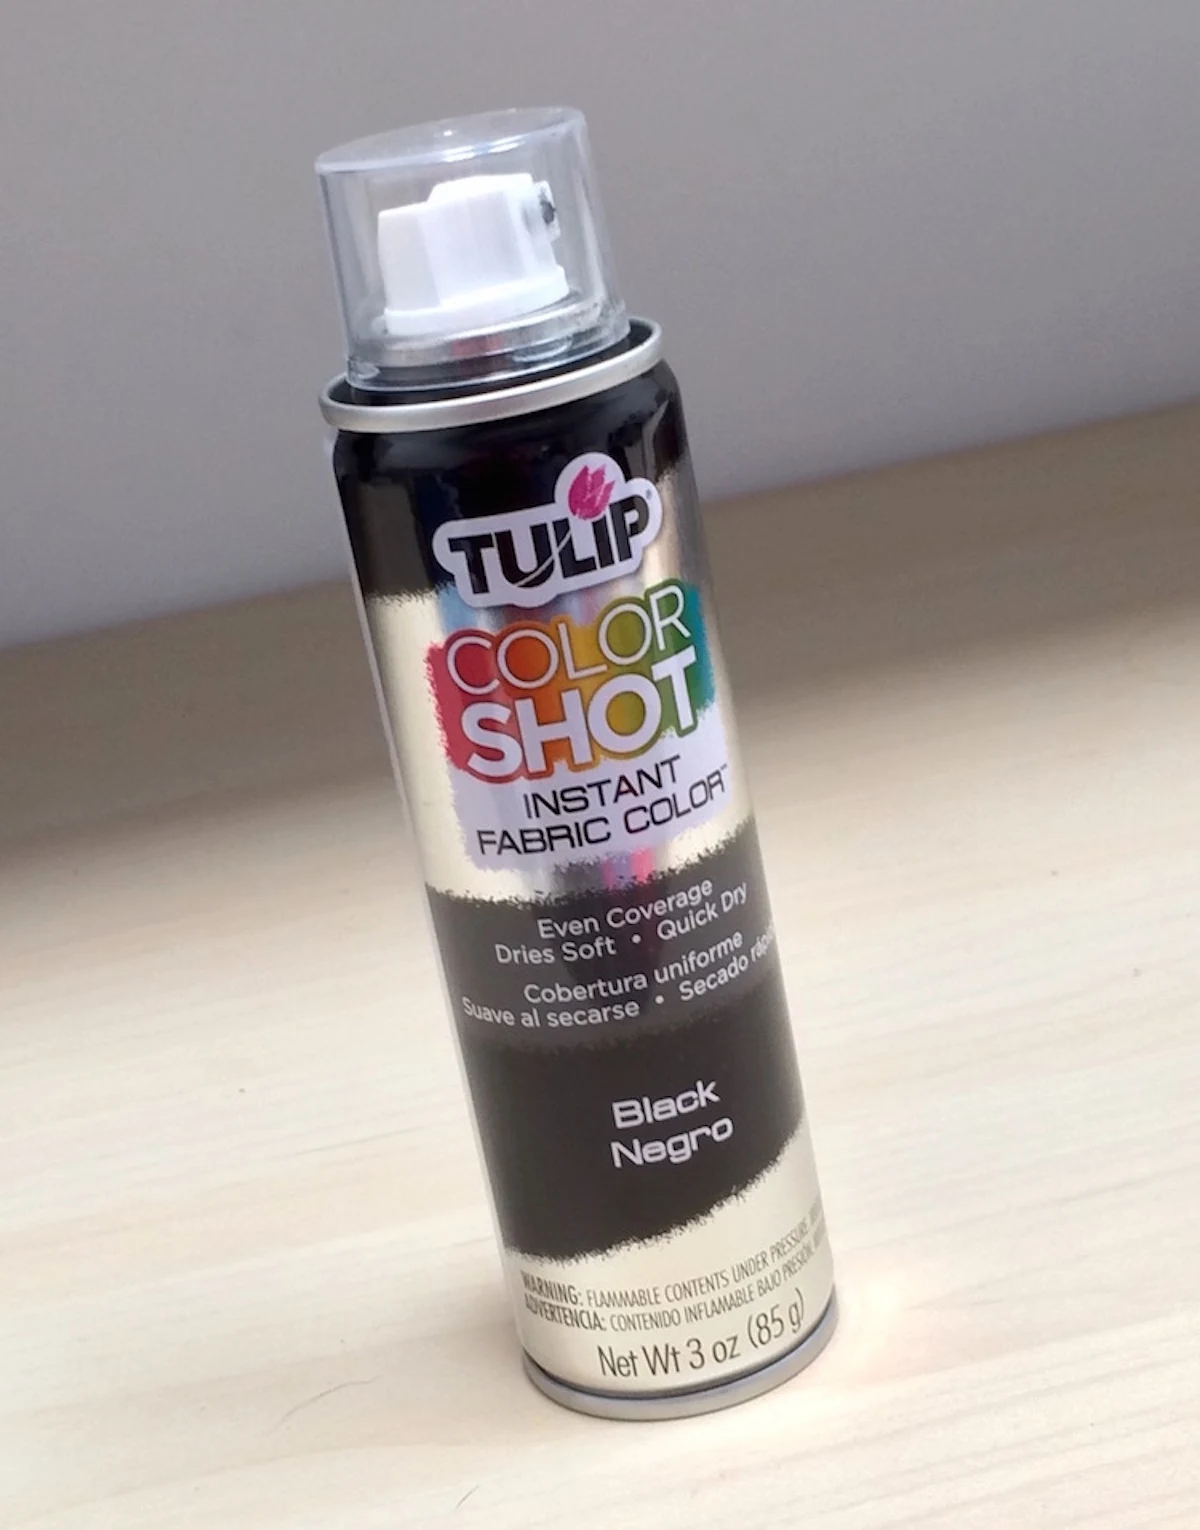 Tulip Color Shot Instant Fabric Color Spray 3 oz, Black